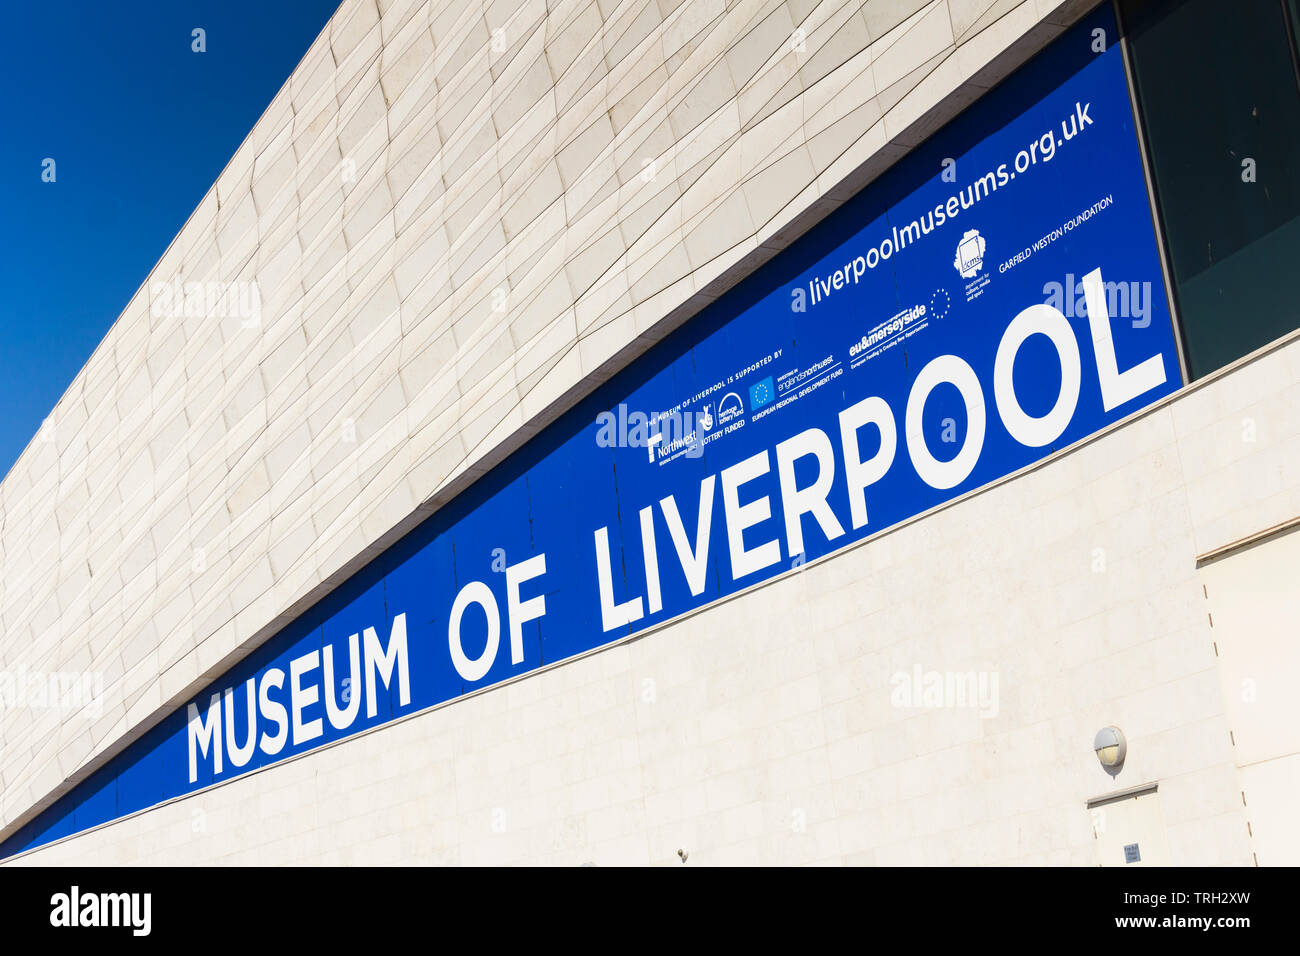 Musée de Liverpool signe sur l'extérieur du bâtiment, en créditant divers UK regional, Heritage Lottery Fund et fonds européens de développement pour le projet Banque D'Images